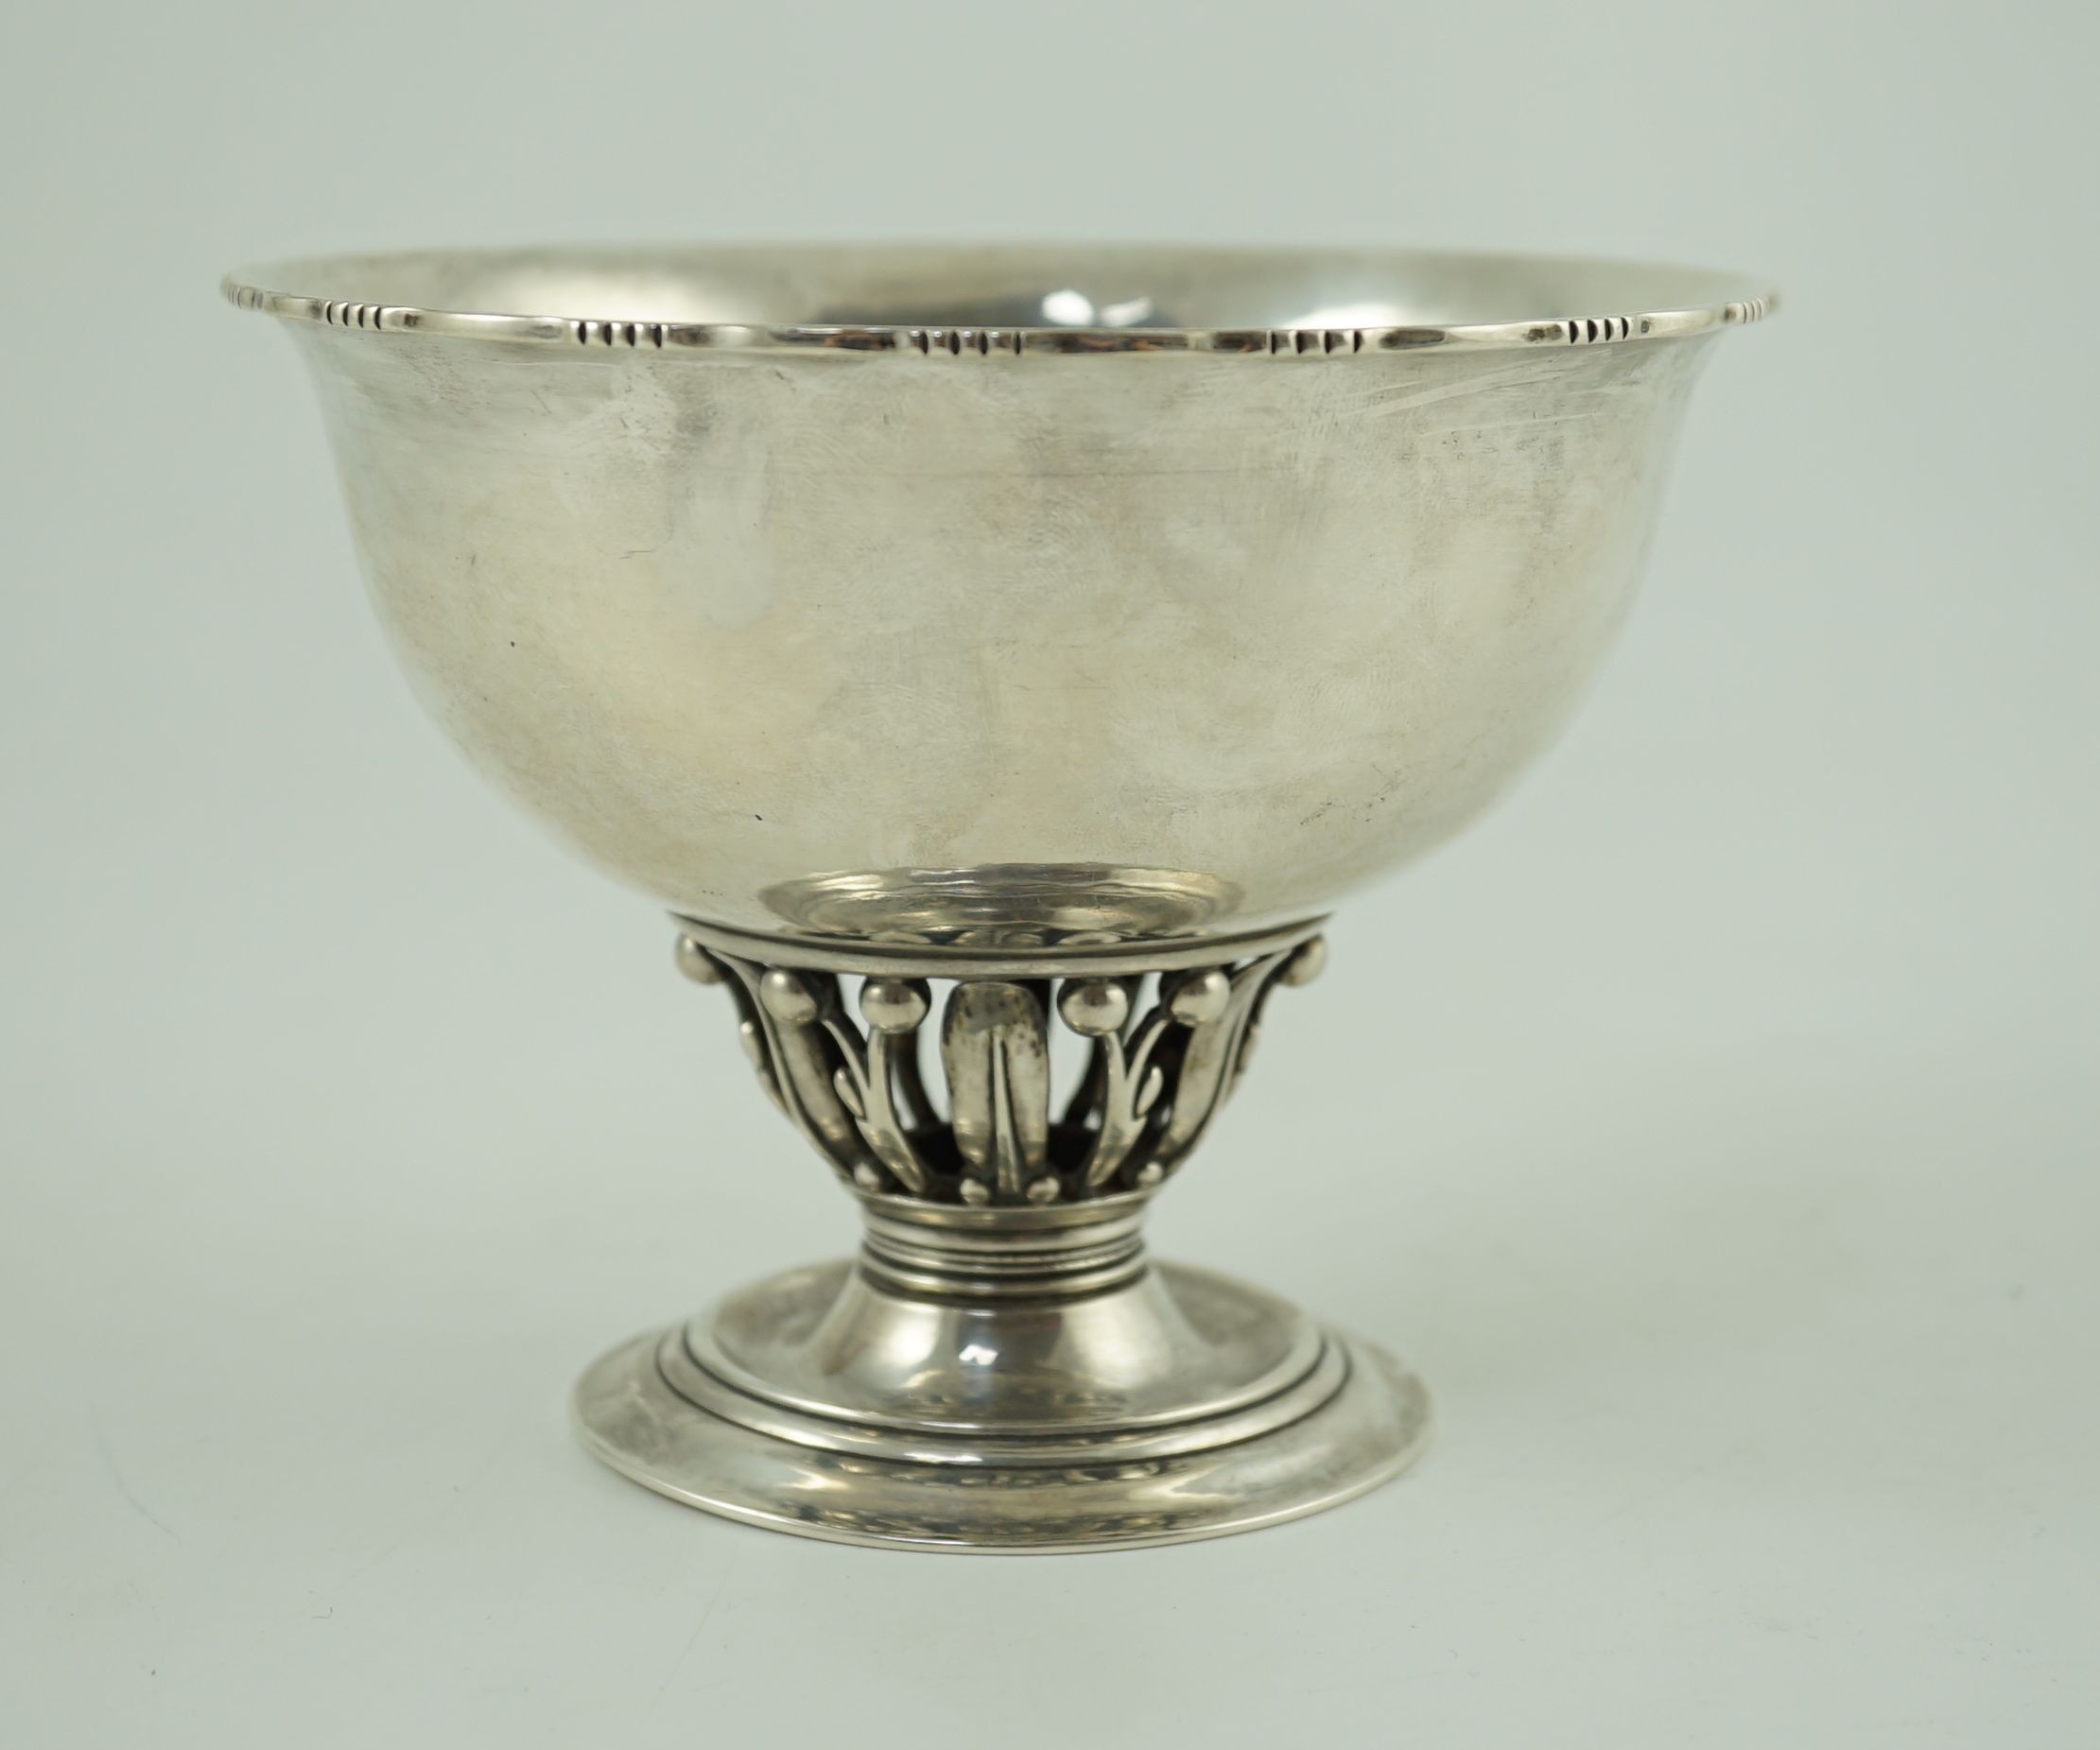 A 1920's Georg Jensen silver Louvre pattern pedestal bowl, design no. 180 B